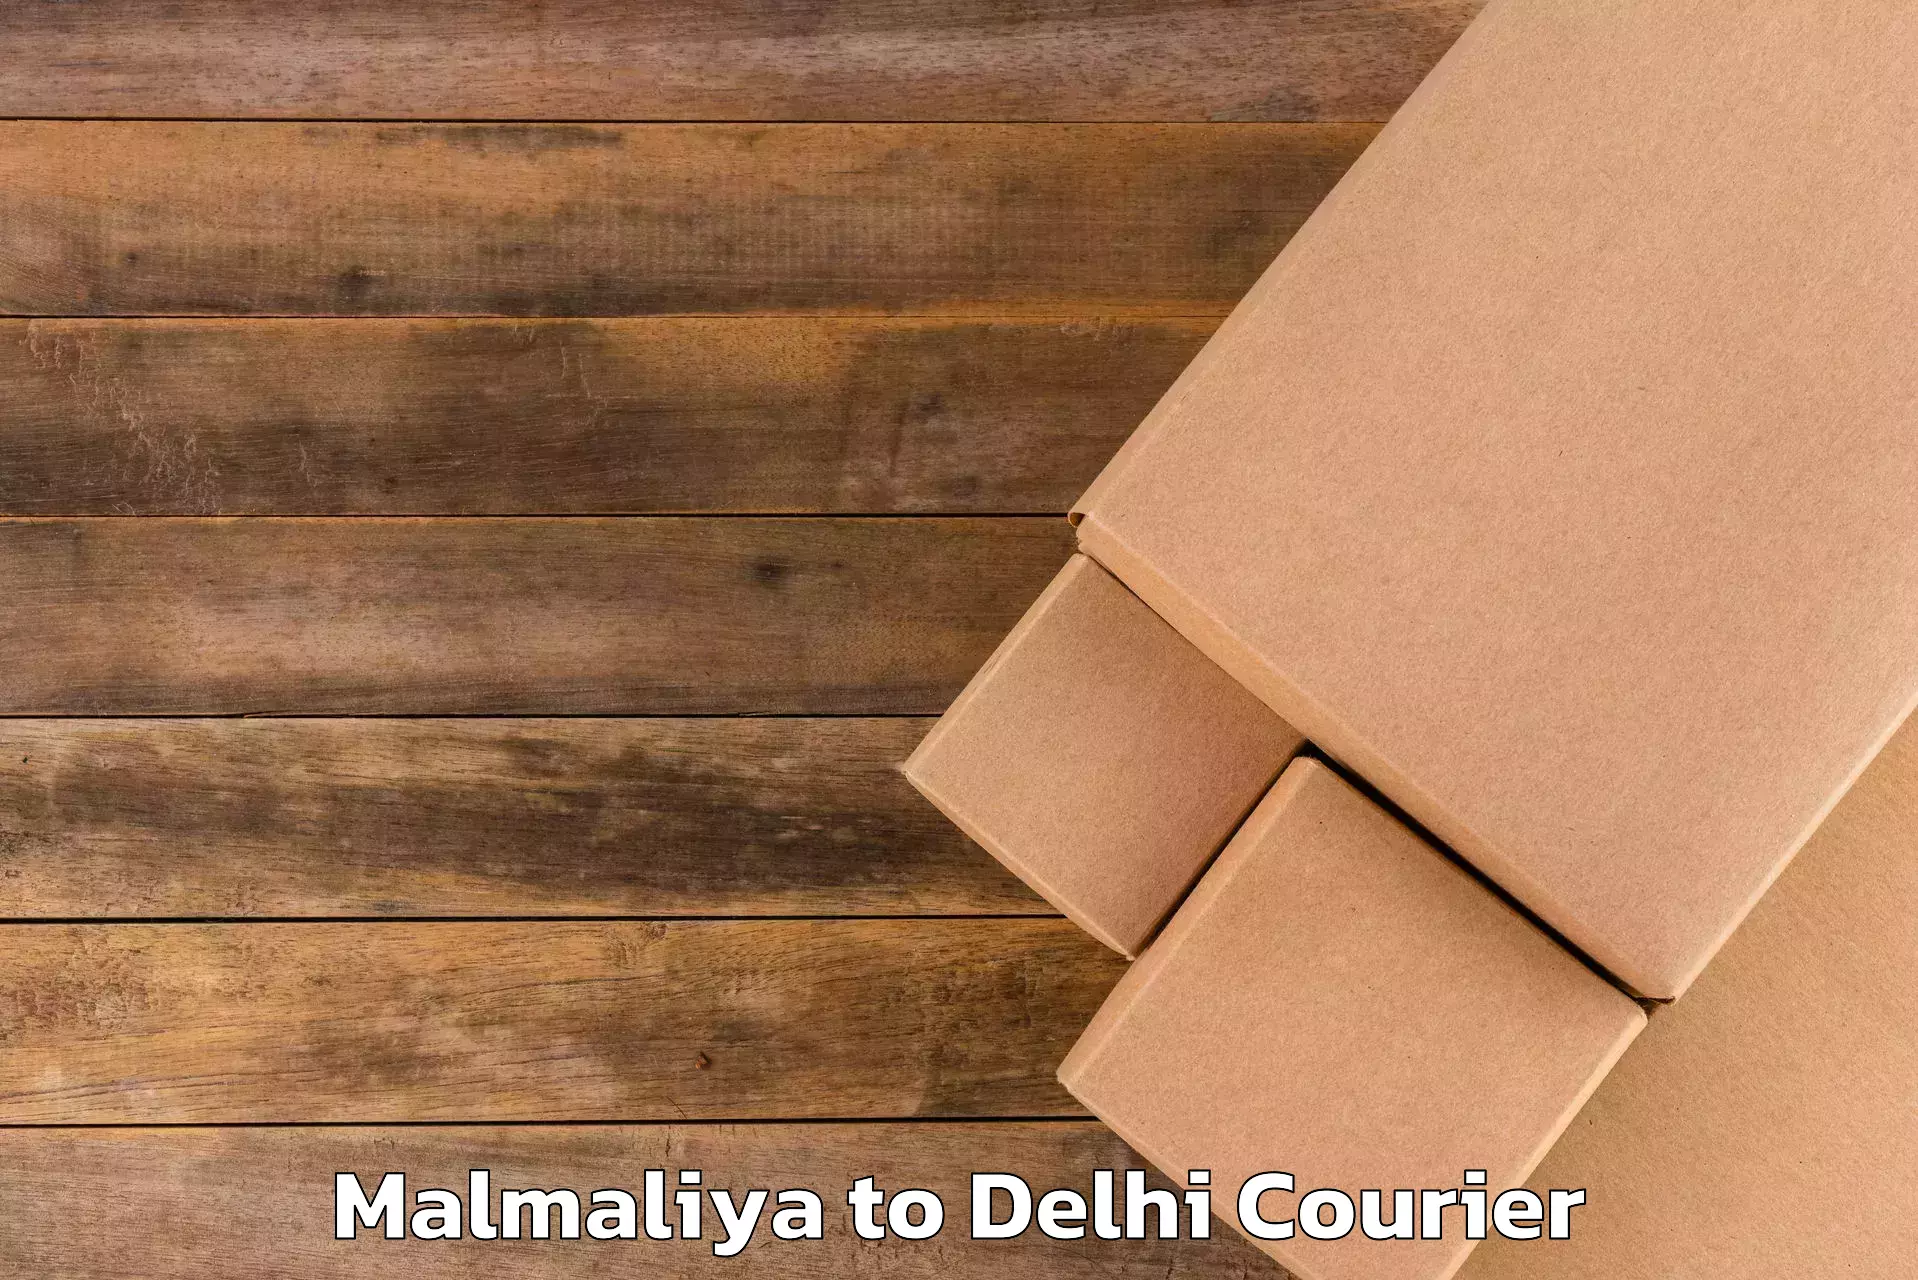 Baggage courier solutions Malmaliya to Indraprastha